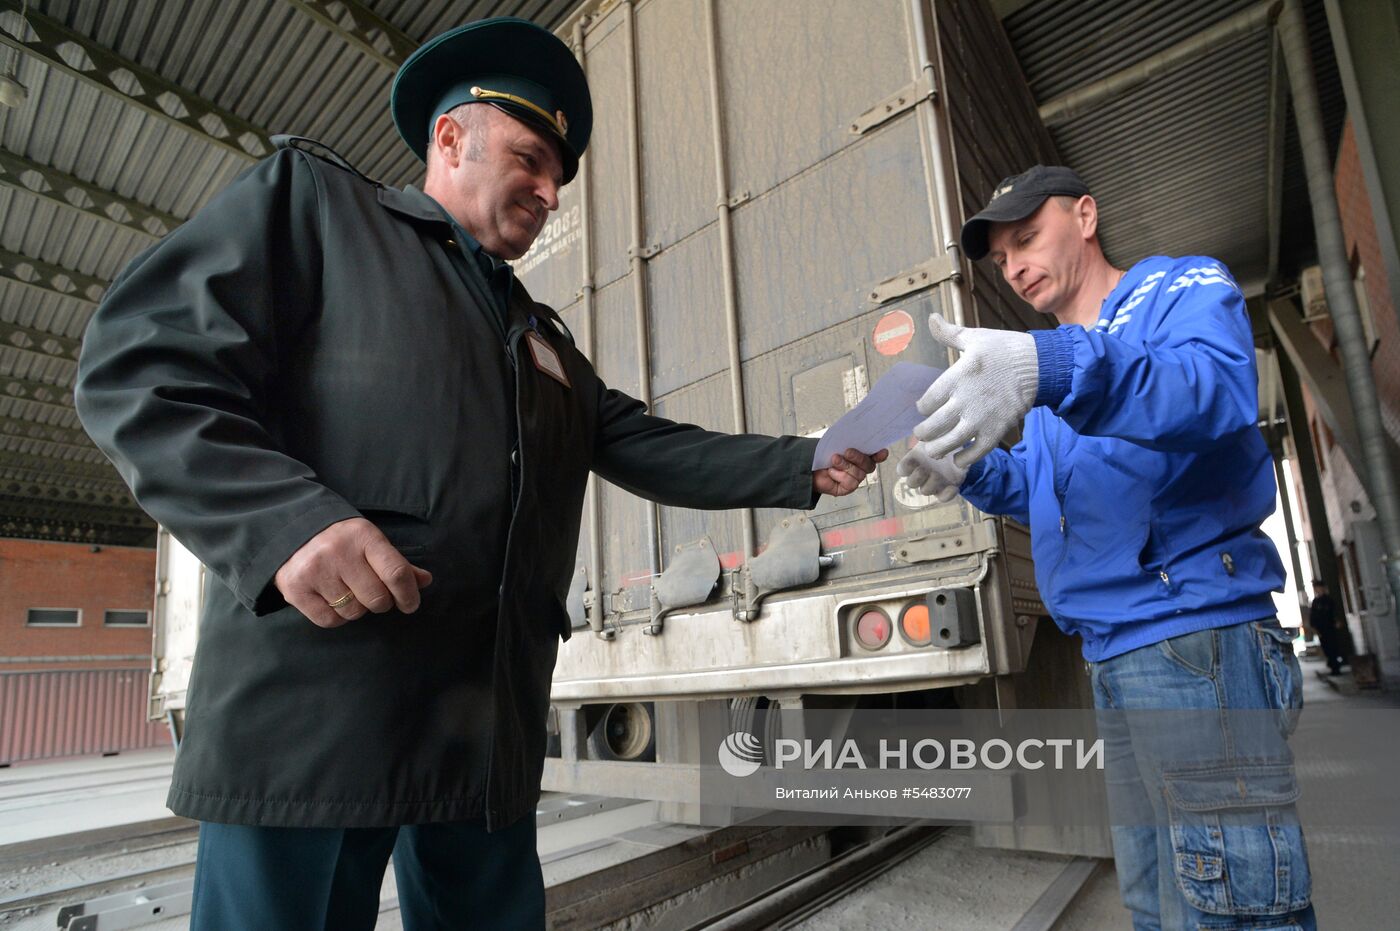 Автомобильный пункт пропуска "Пограничный" в Приморском крае